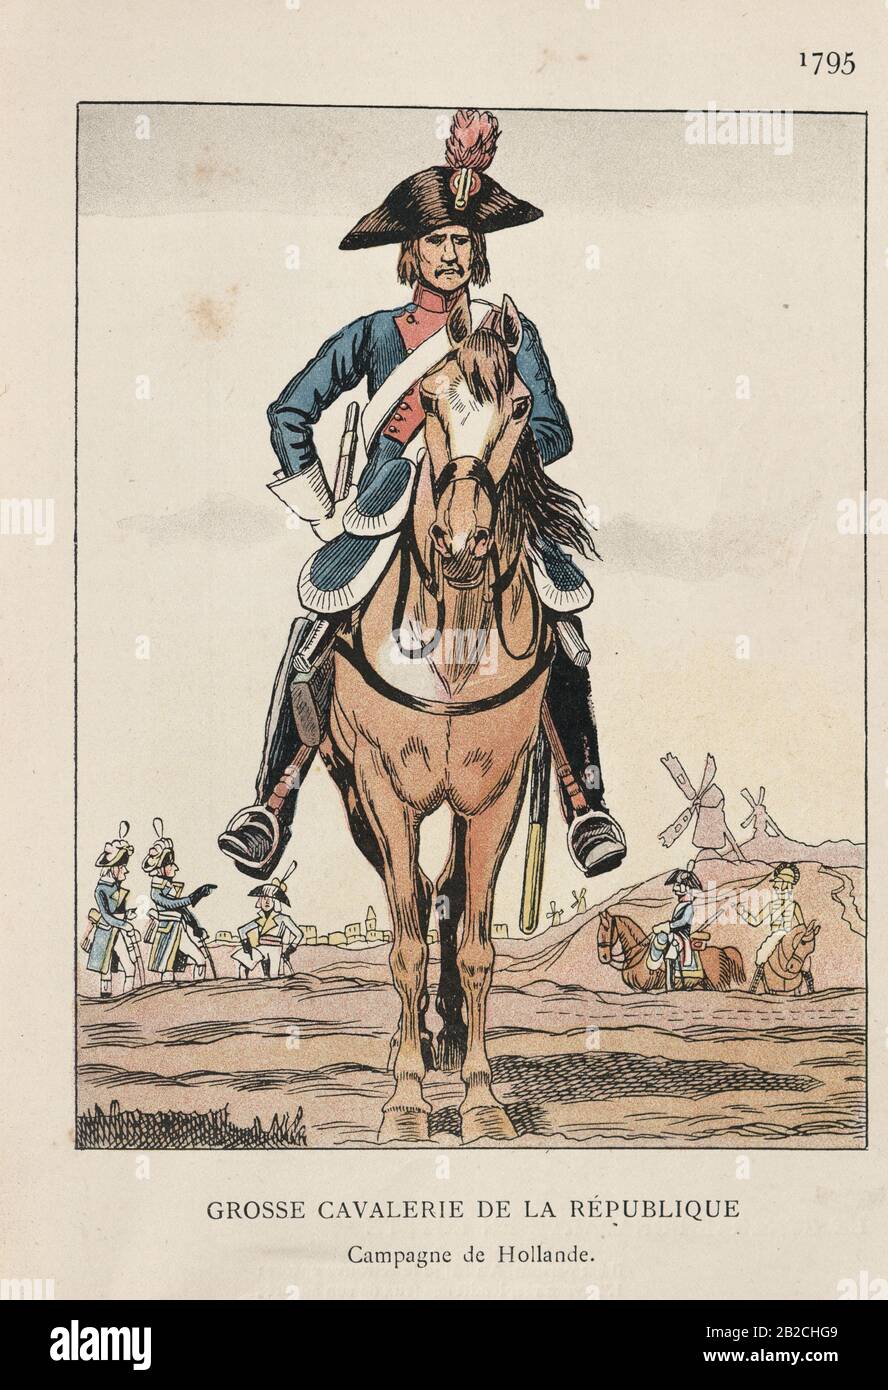 Soldato di cavalleria pesante della Repubblica francese, Guerre rivoluzionarie francesi Foto Stock